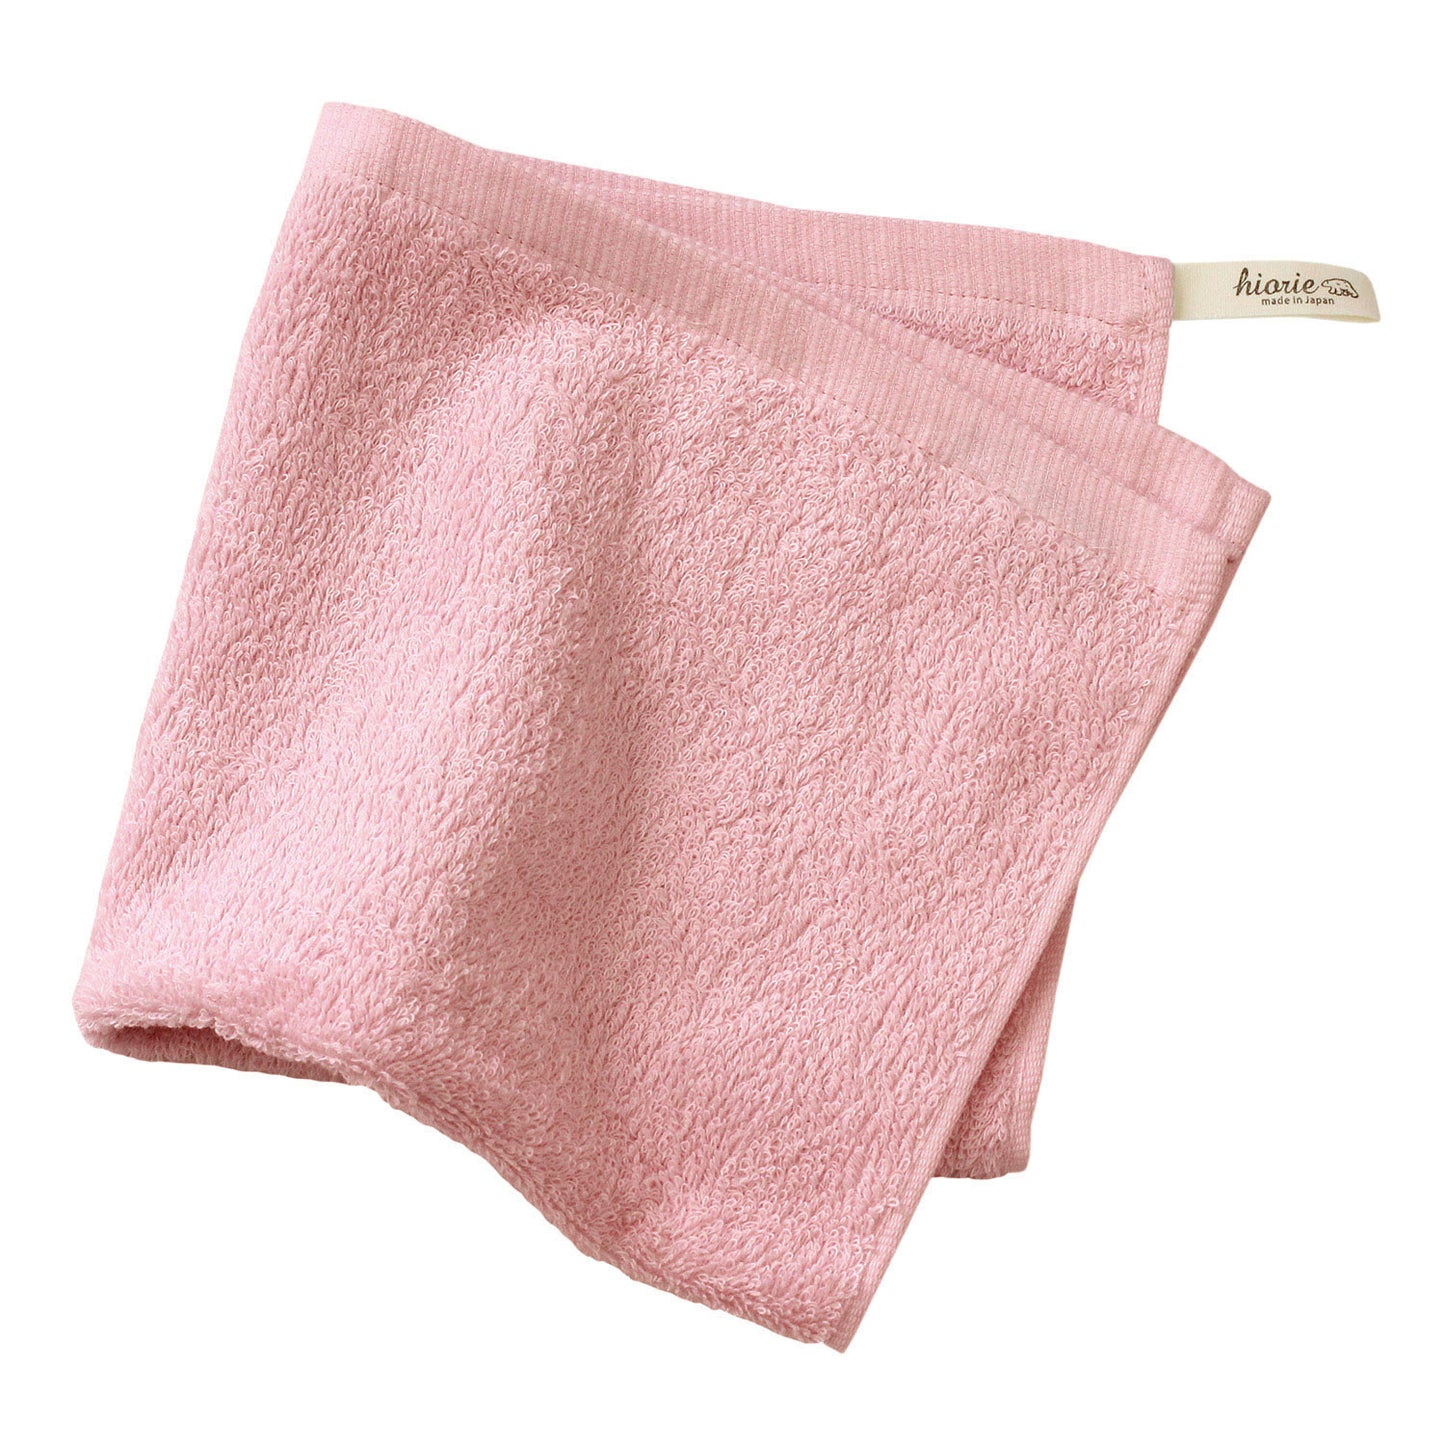 Hiorie Hotel Weiches, bakterizides, wasserabsorbierendes Handtuch aus Baumwolle, 100 % Japan